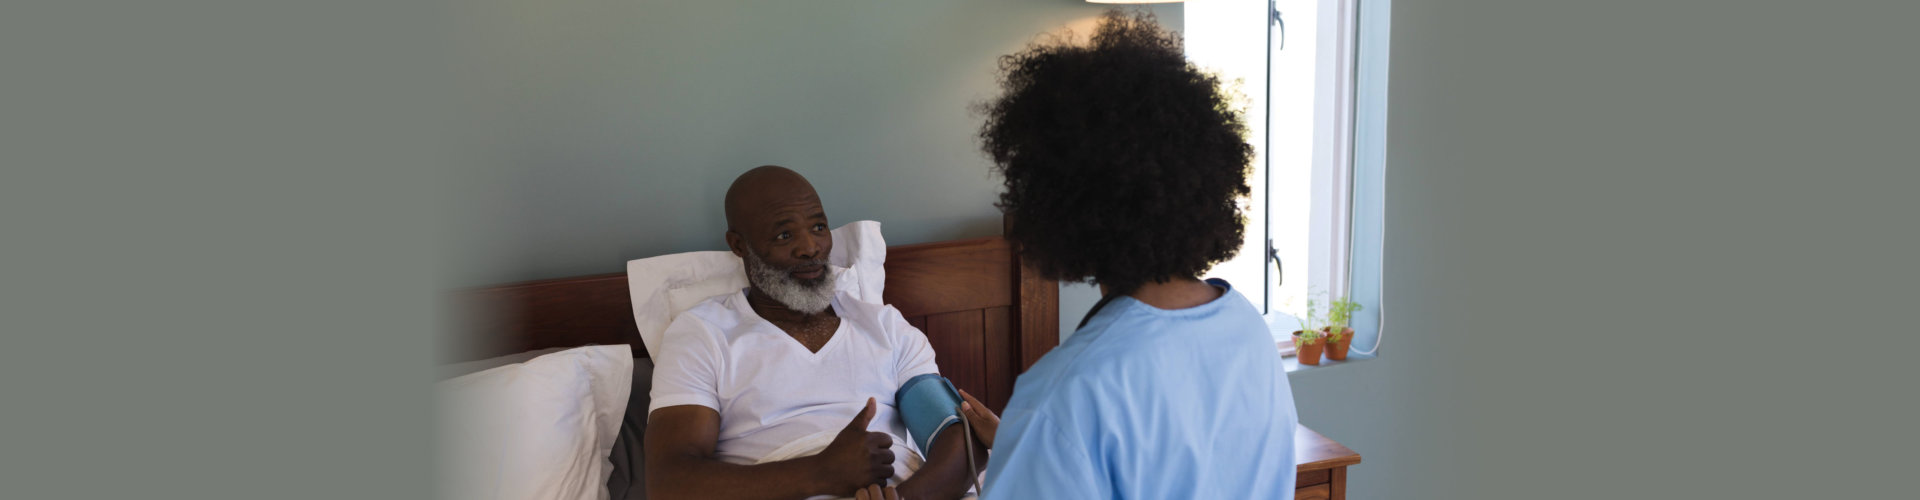 nurse checking blood pressure of senior man